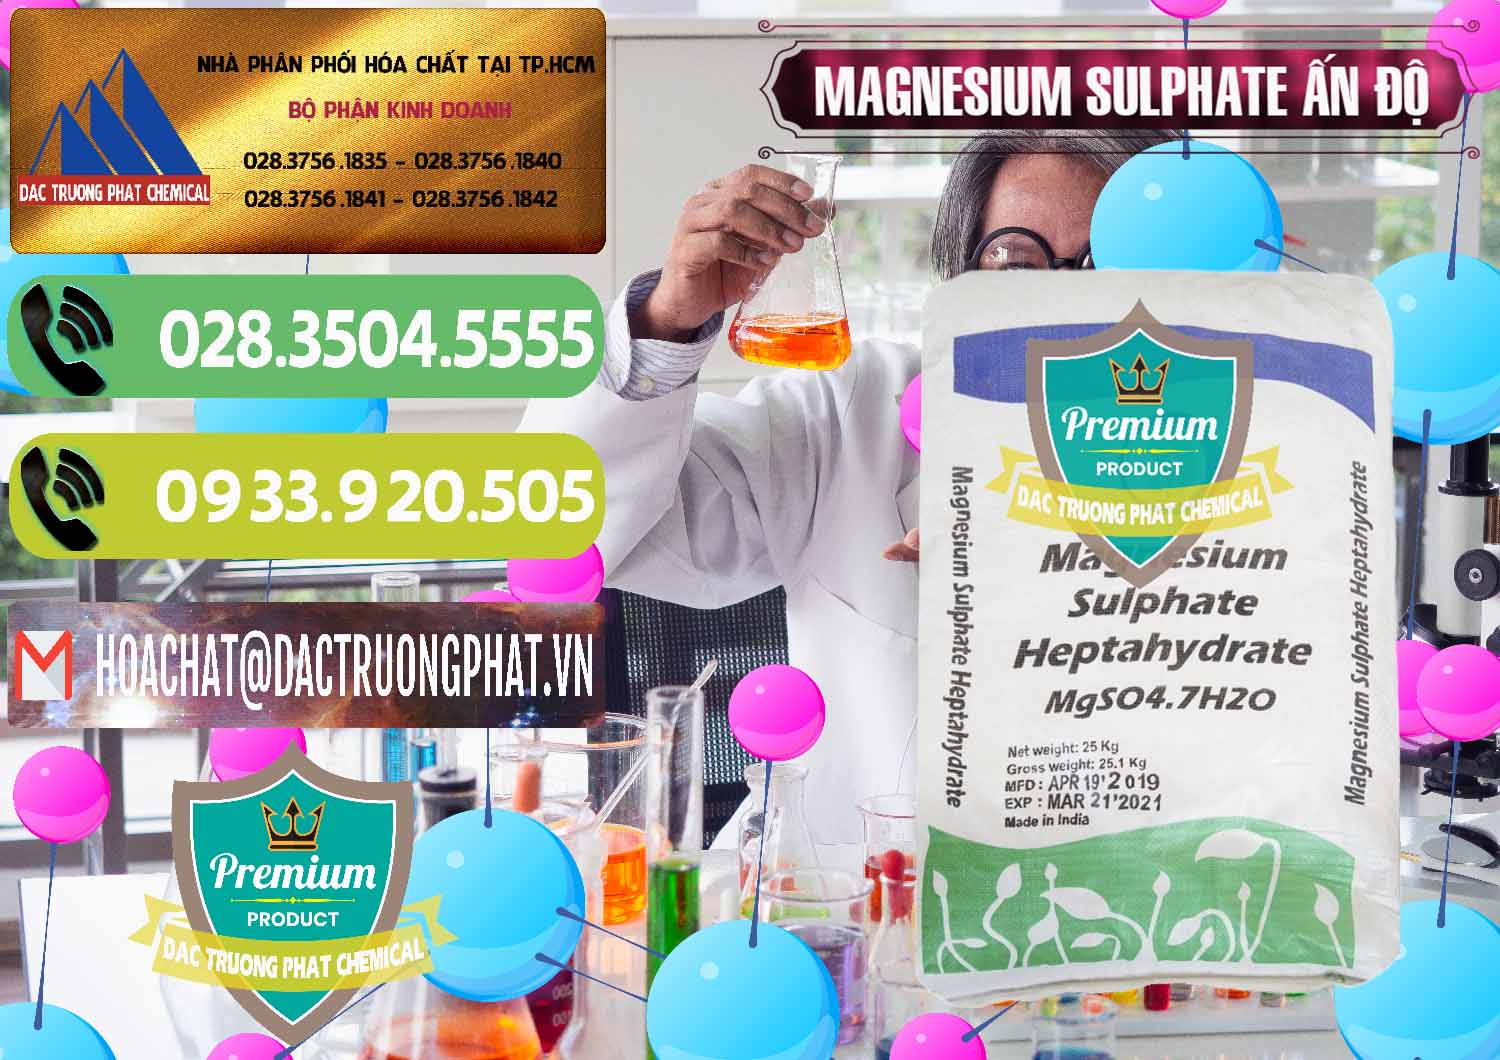 Nơi bán _ phân phối MGSO4.7H2O – Magnesium Sulphate Heptahydrate Ấn Độ India - 0362 - Đơn vị cung cấp và phân phối hóa chất tại TP.HCM - hoachatmientay.vn